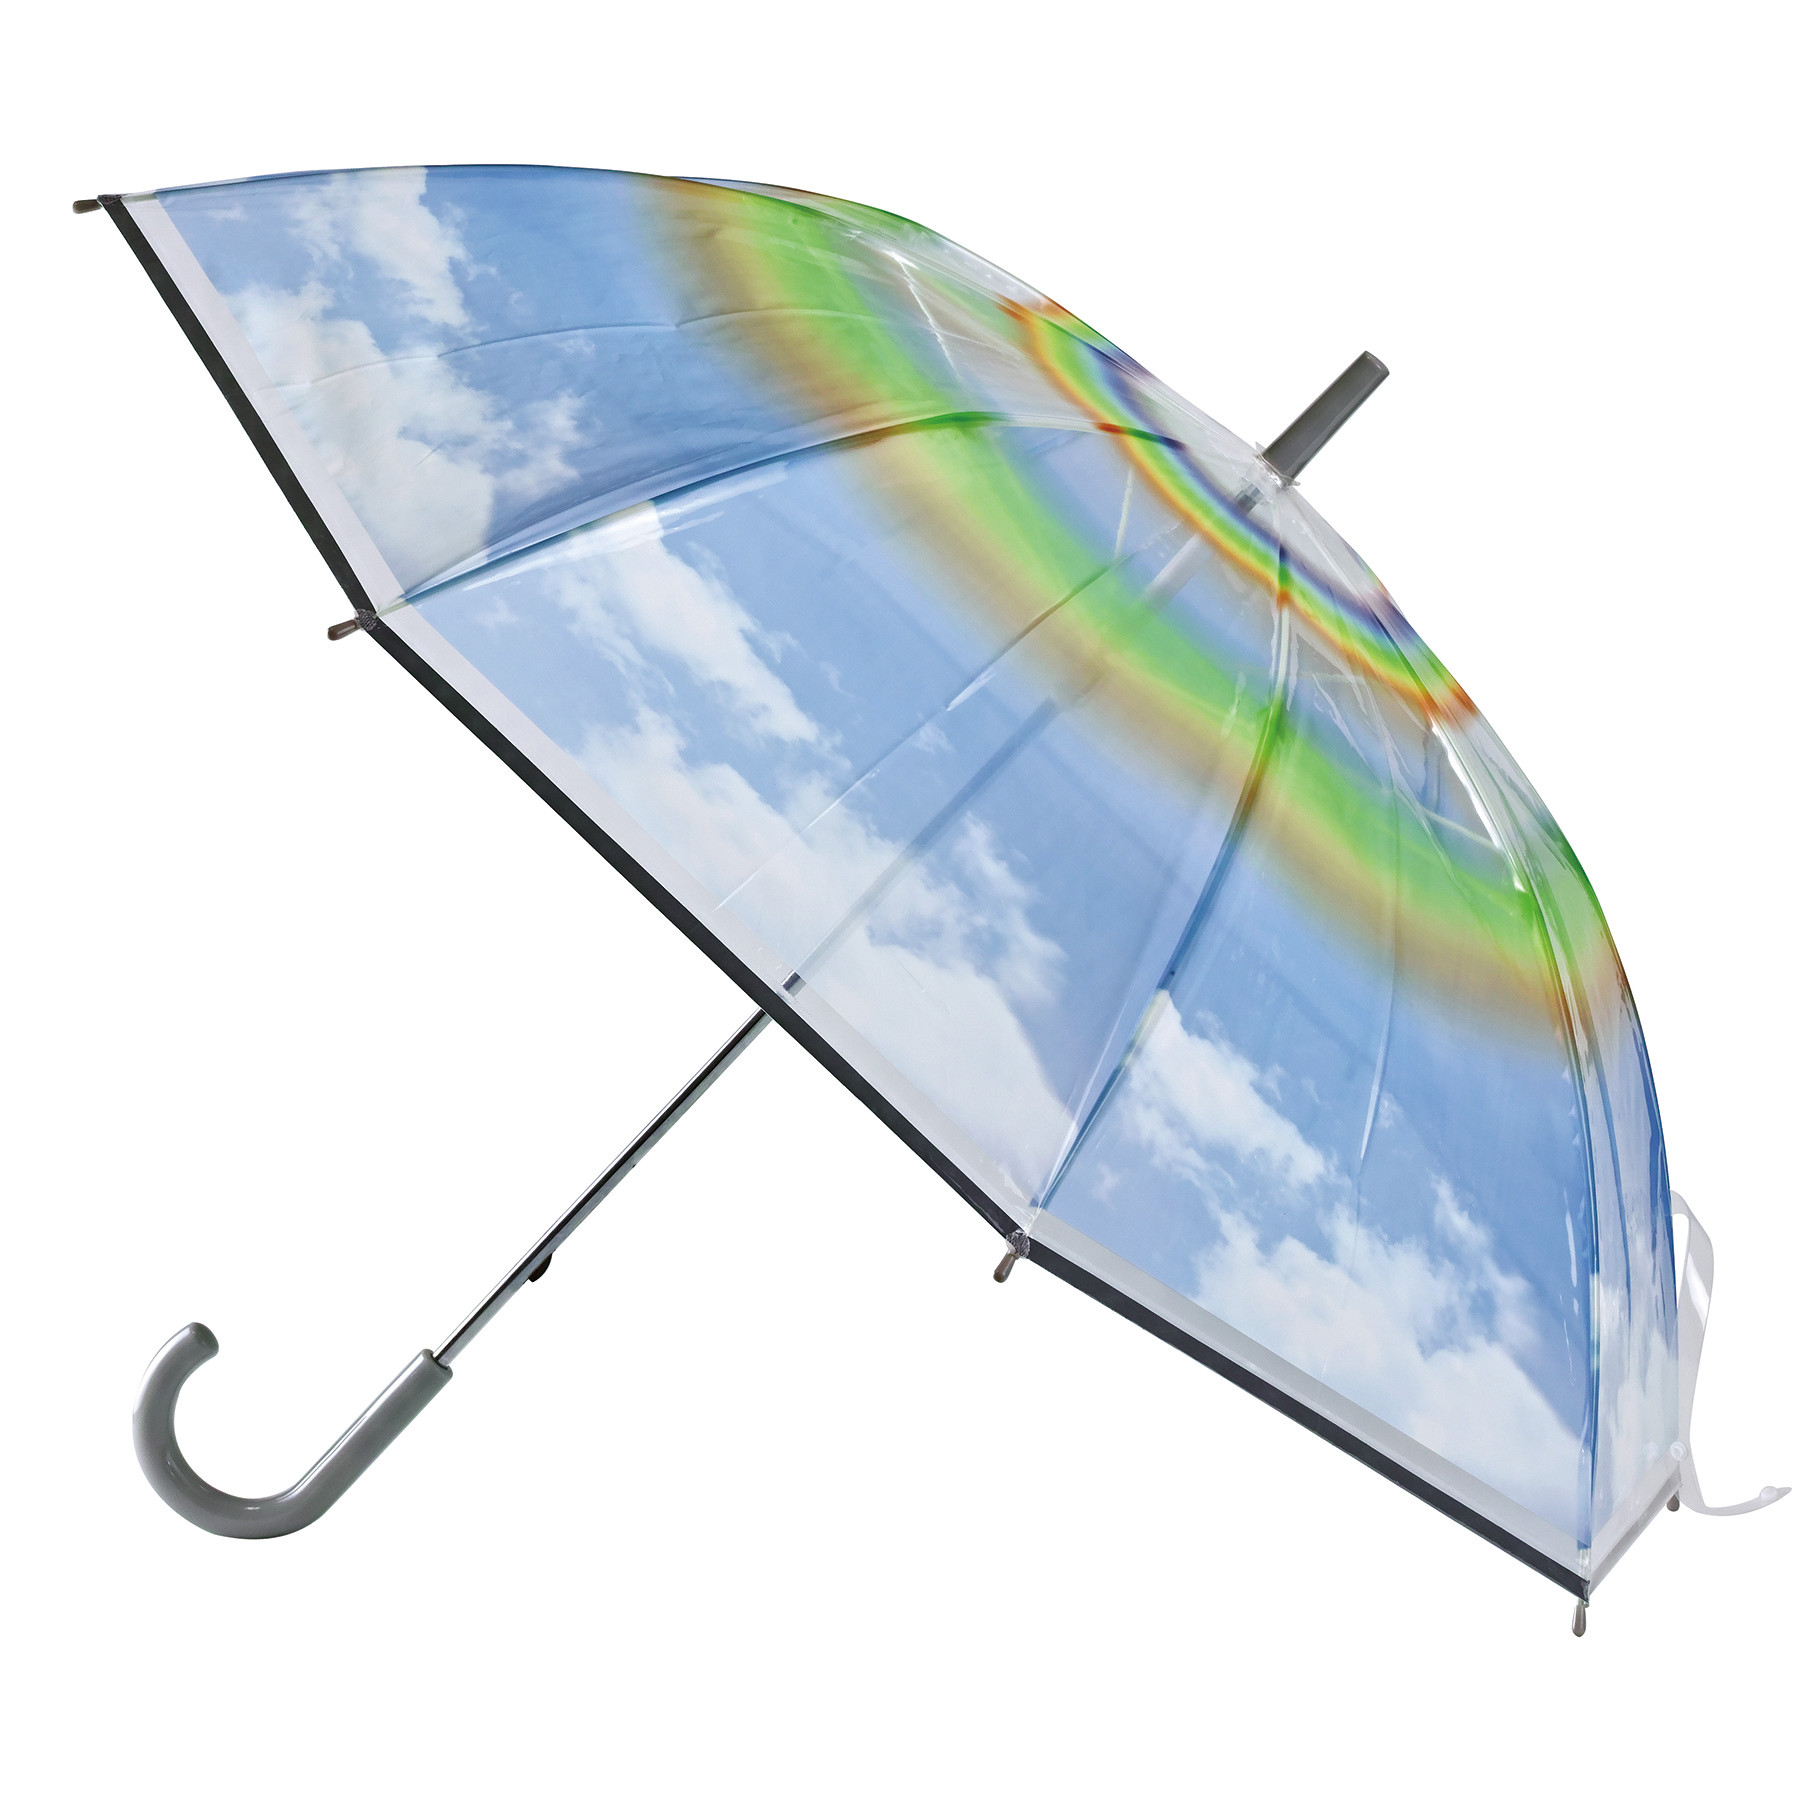 エモい傘 として人気 デザインビニール傘 ハッピークリアアンブレラ から新柄登場 Kufura クフラ 小学館公式